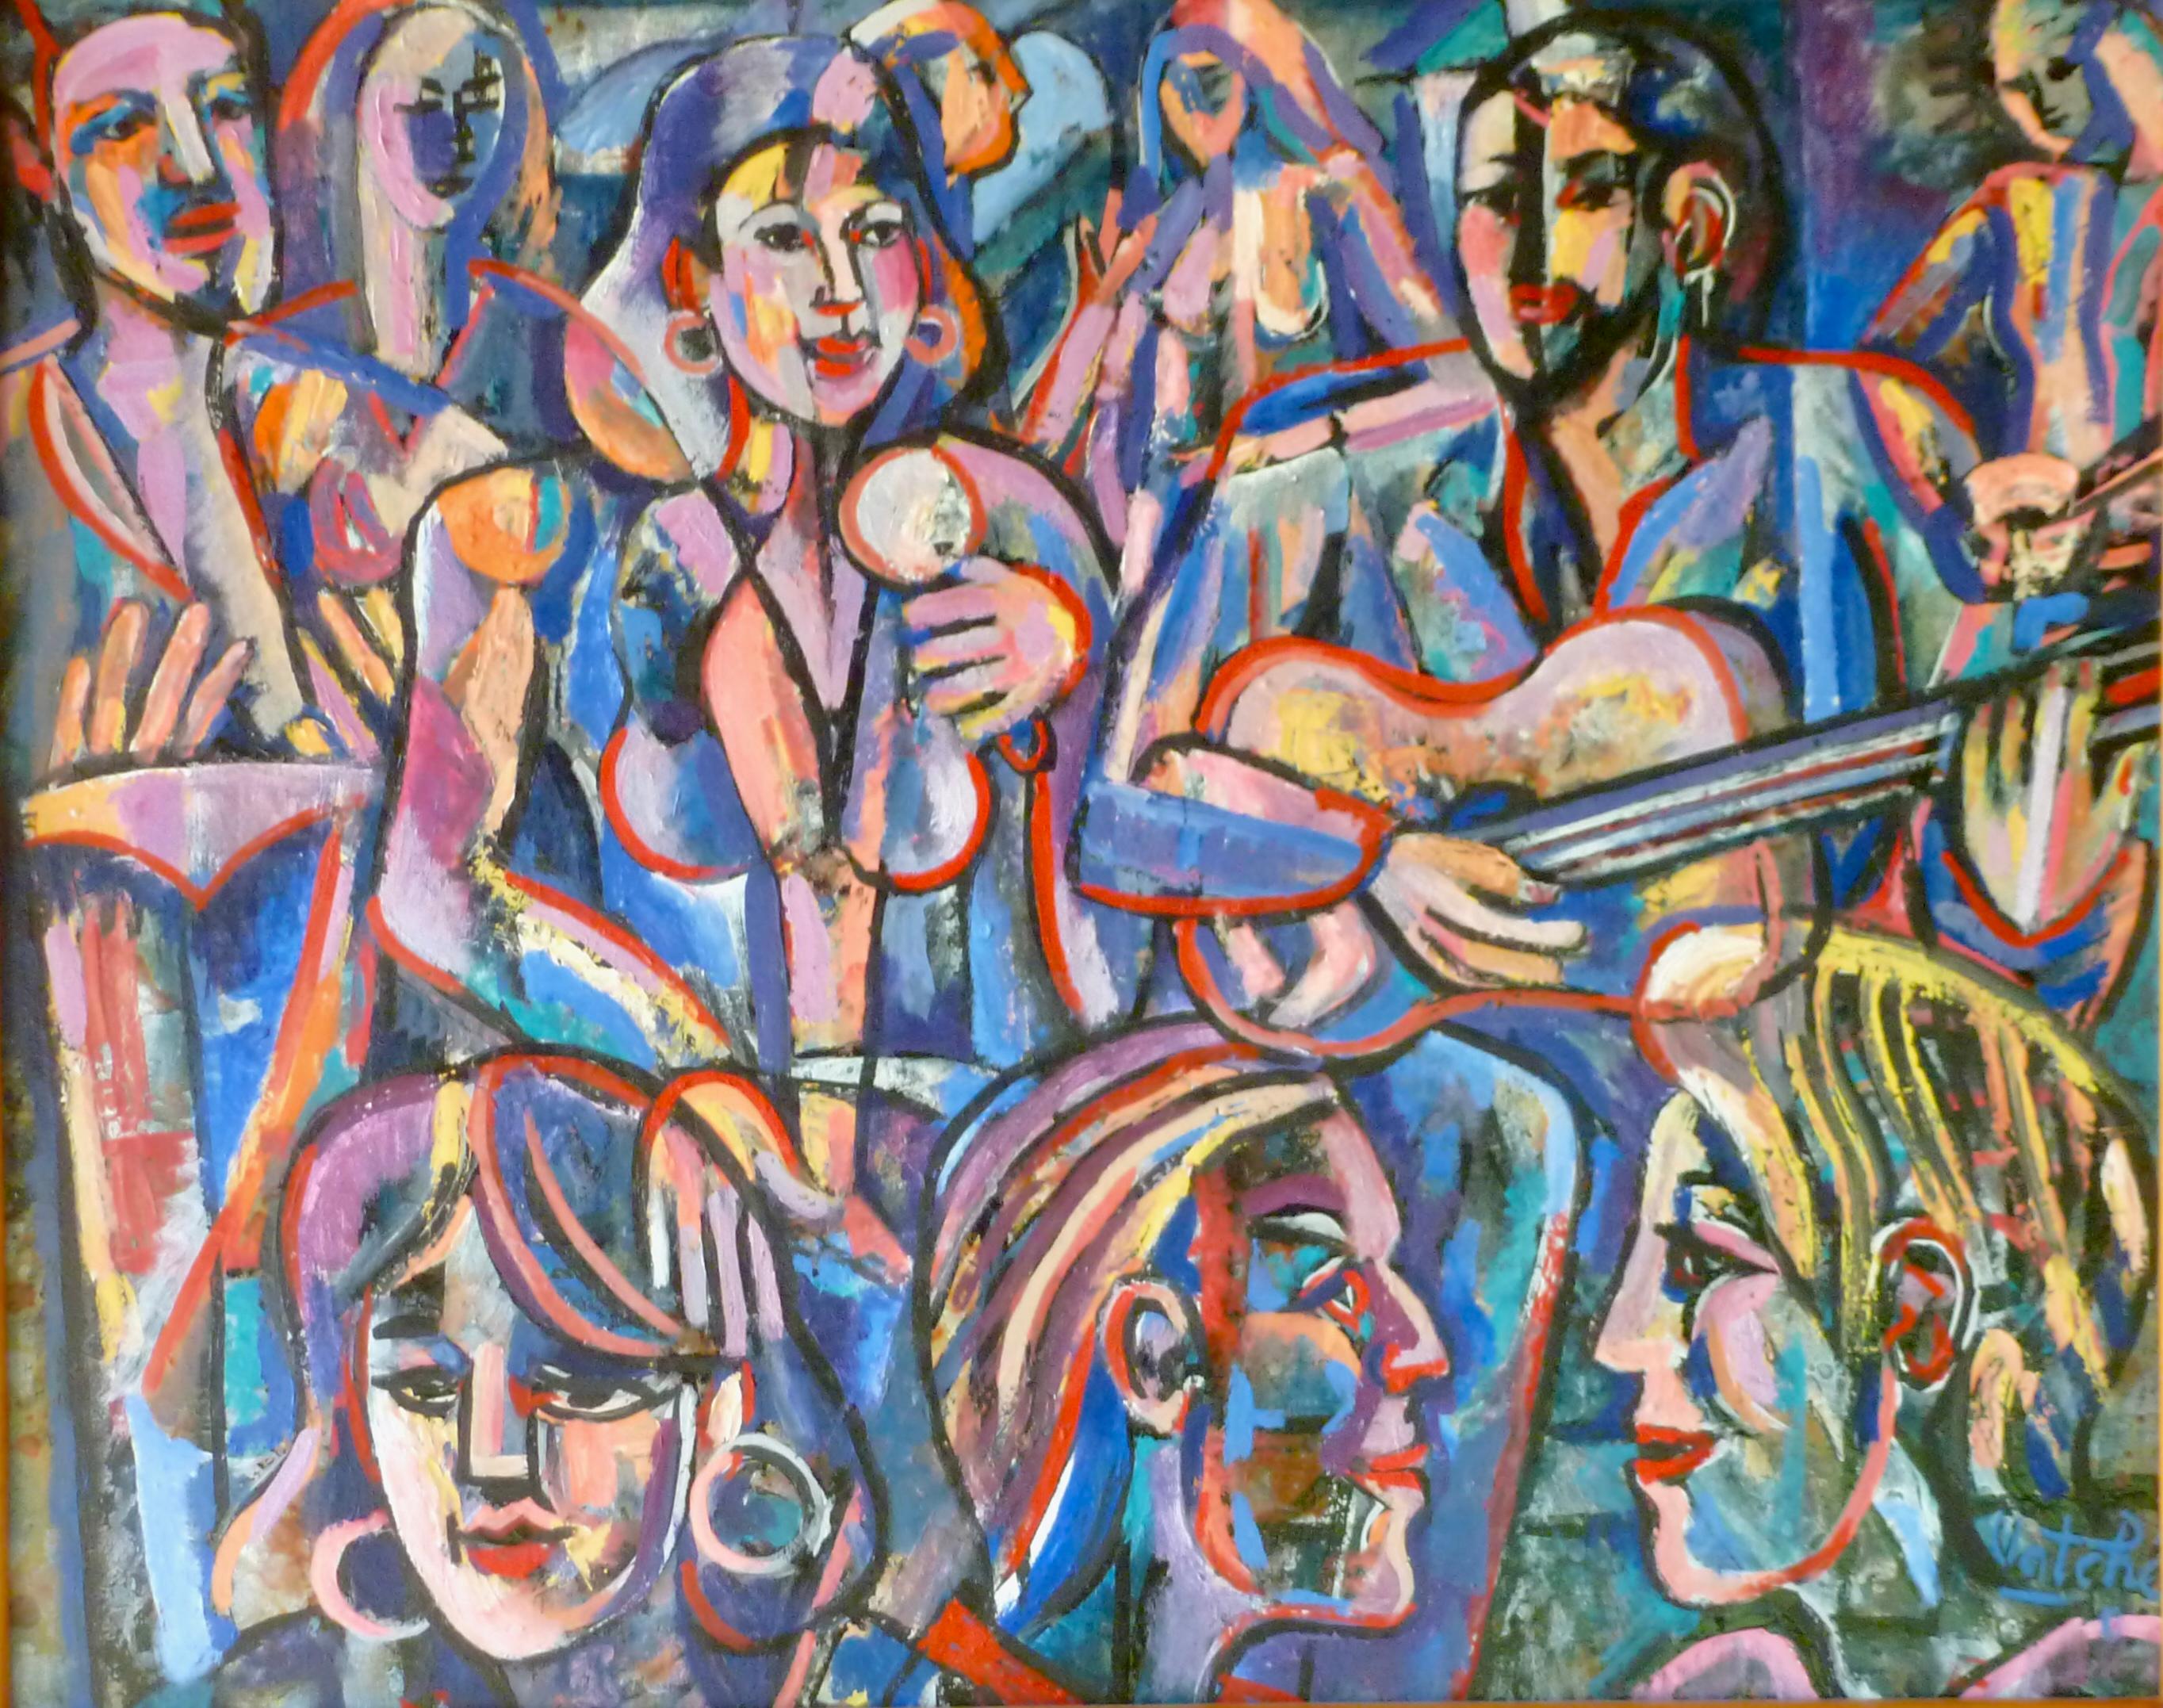 Musiker bei einer Party 2022 farbenfrohe Öl/Leinwand abstrakte surreale armenische Künstlerin